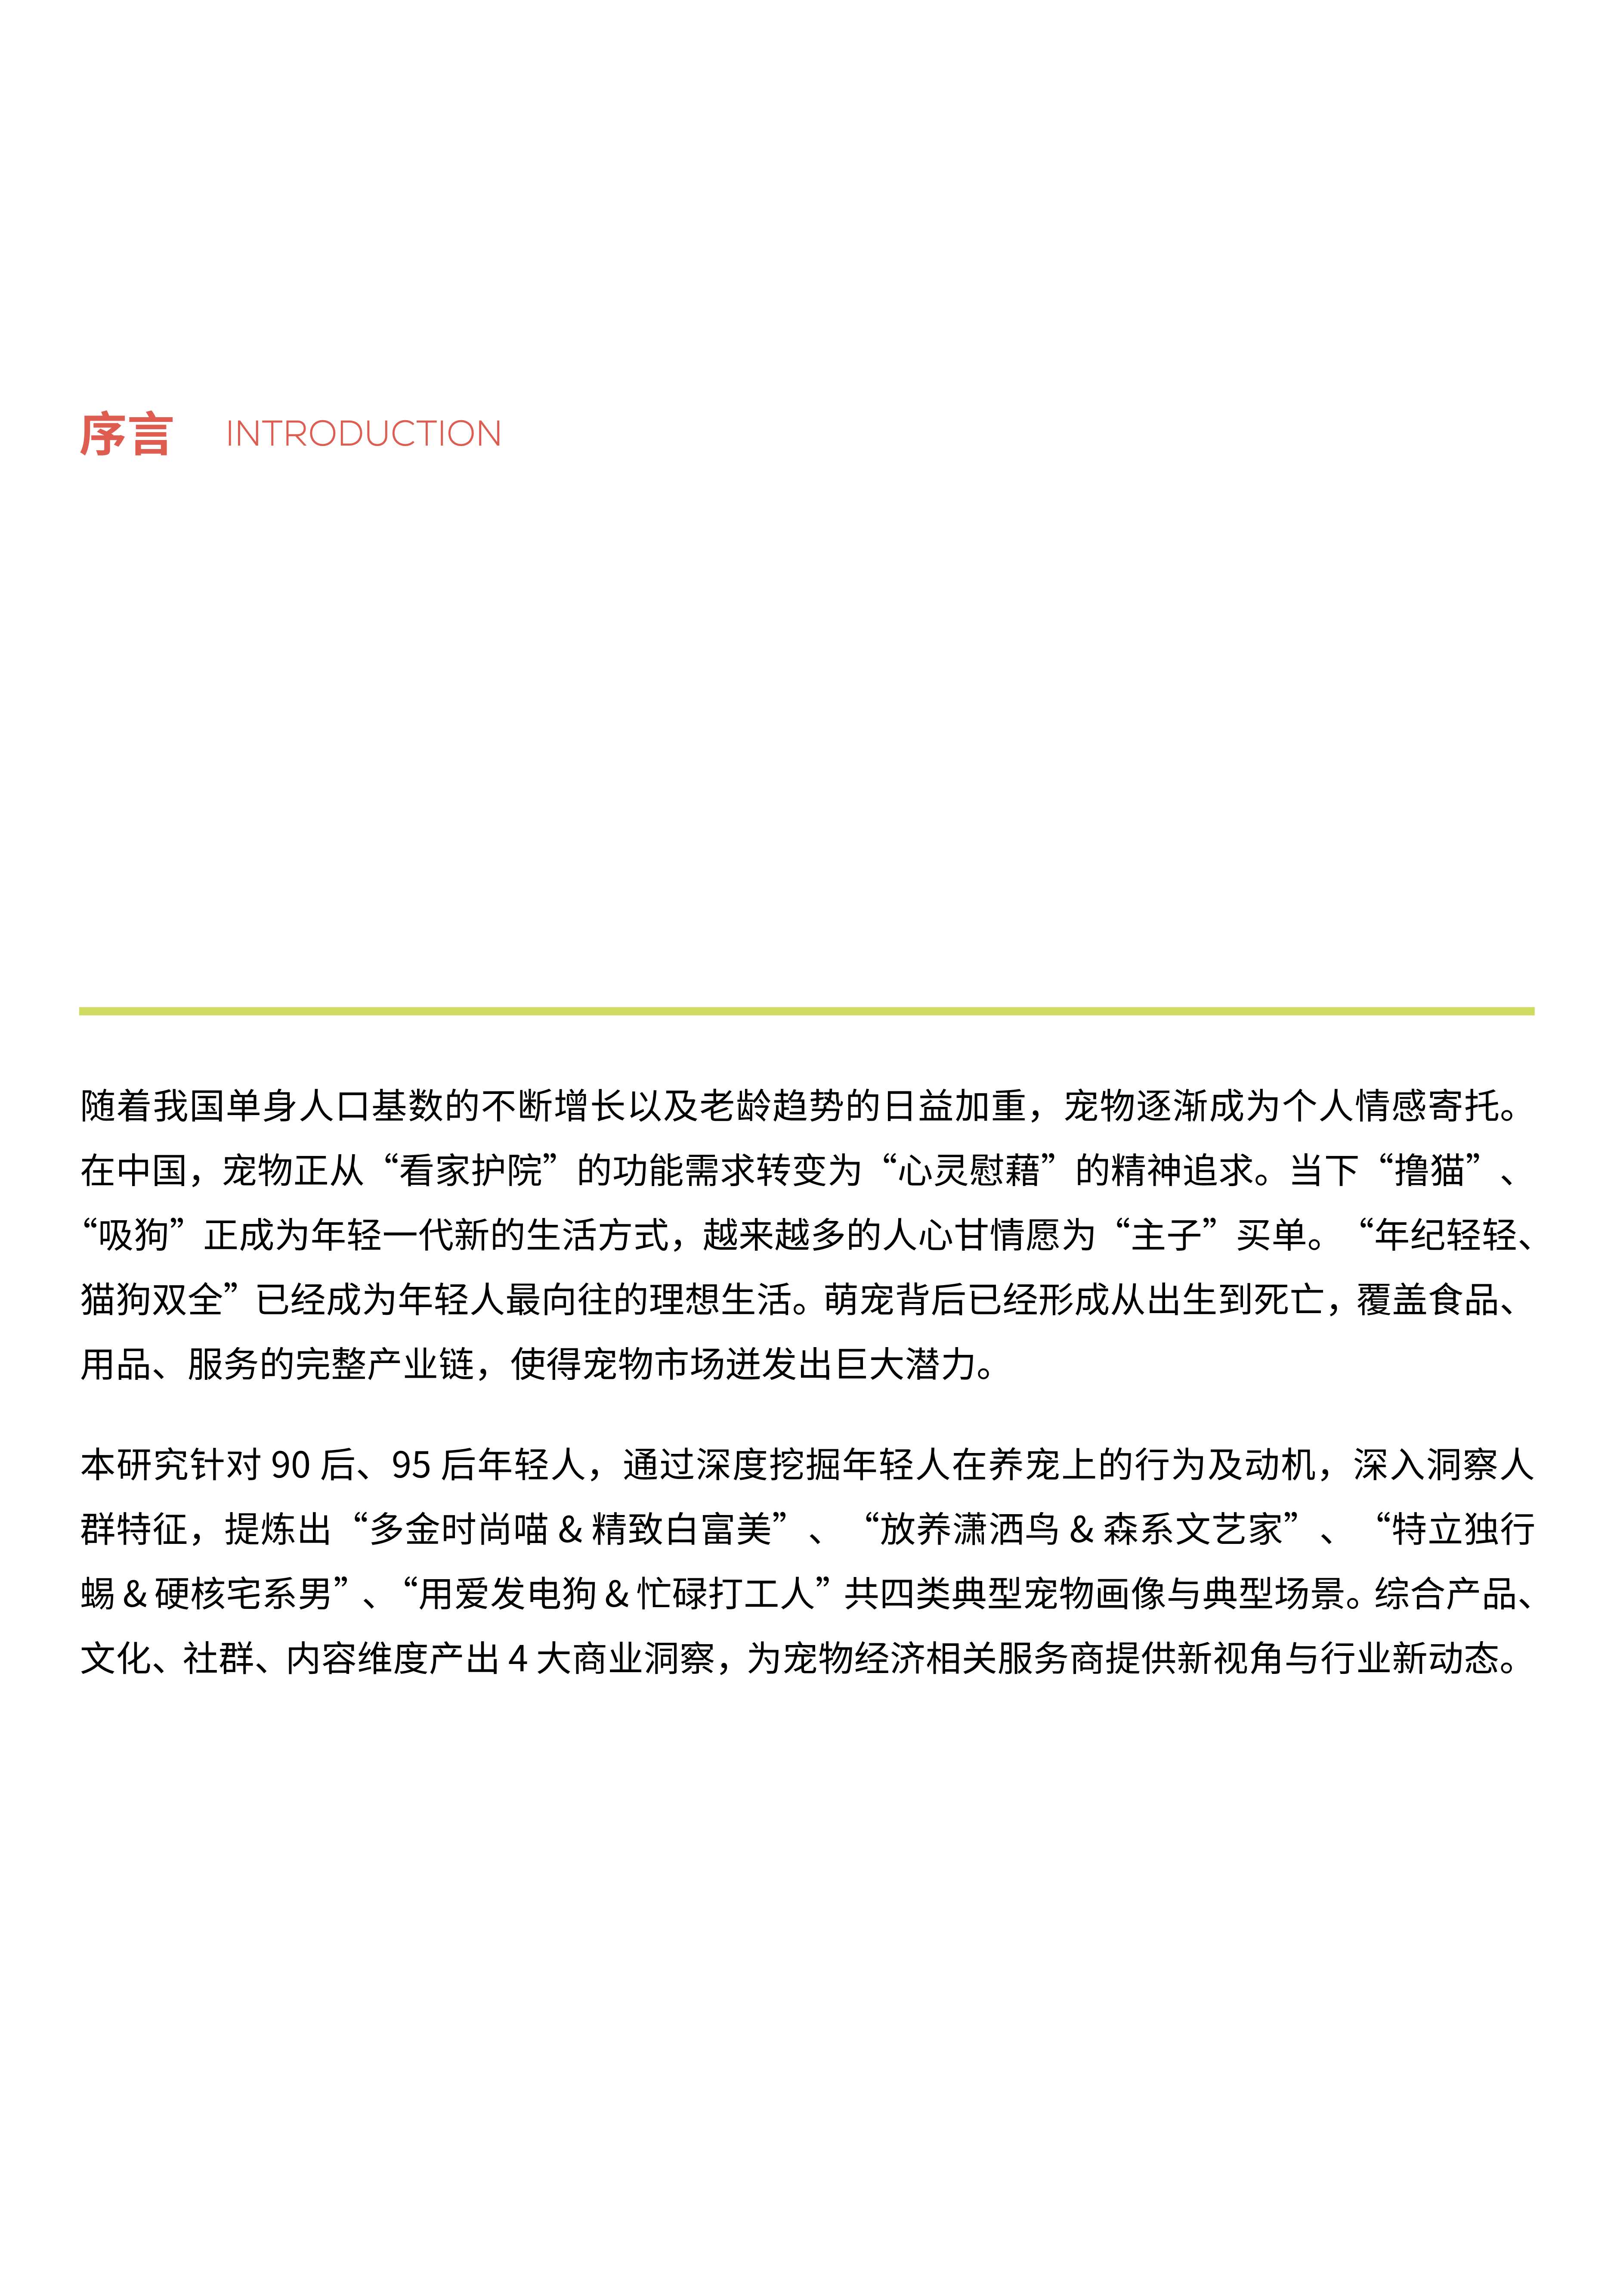 体验思维创研院-中国新生代养宠白皮书-2021.12-33页